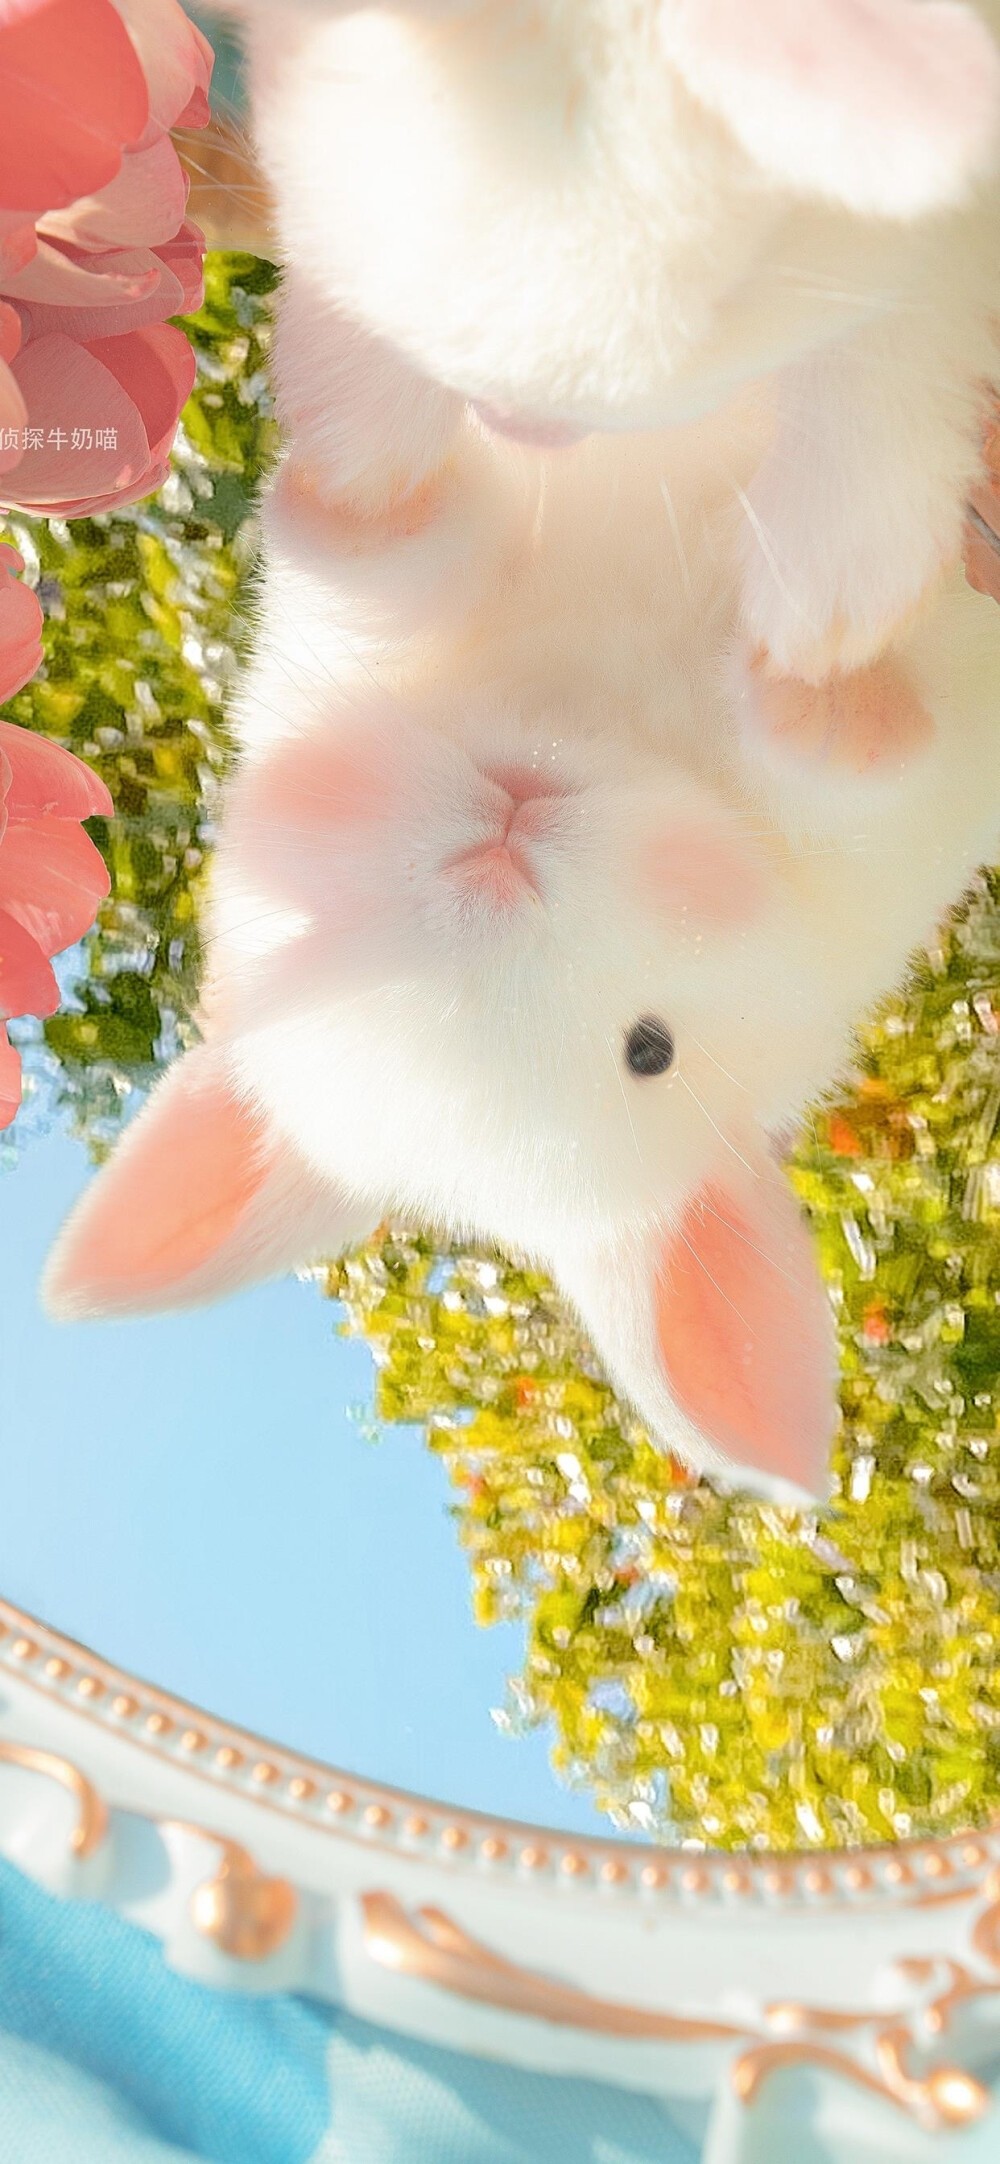 超级可爱的小兔子